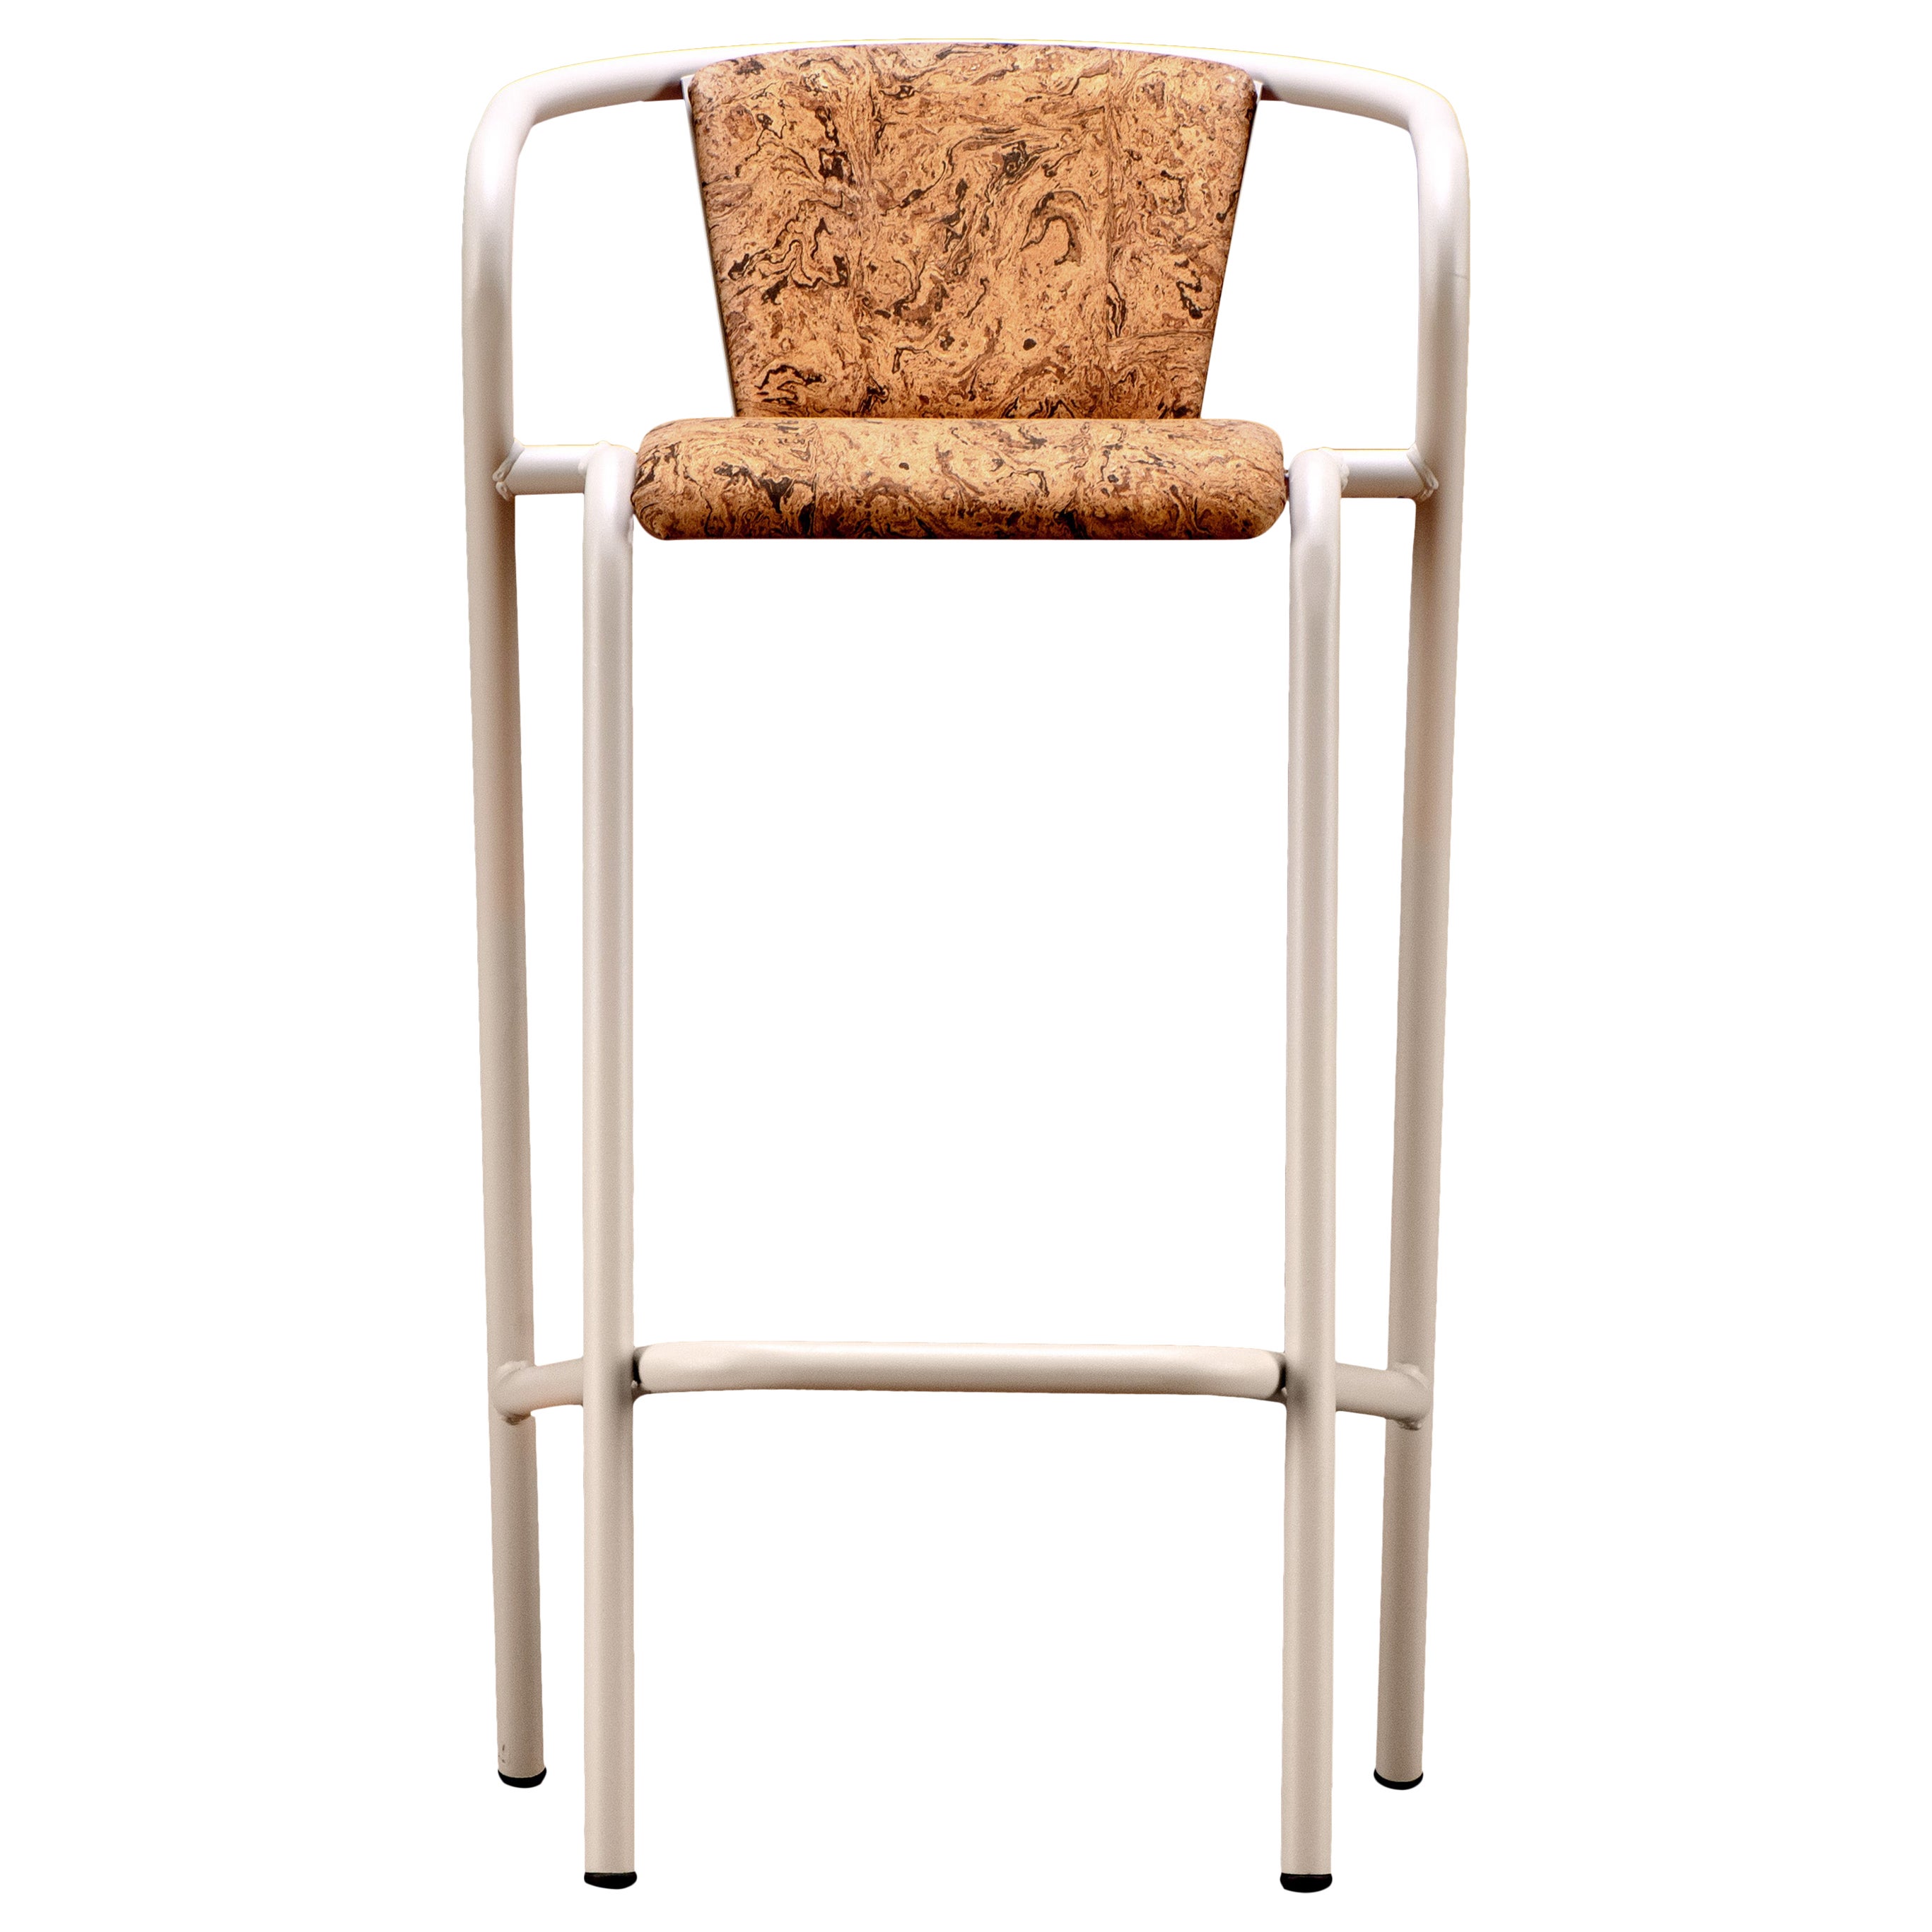 BICA-Sessel, moderner Hocker aus Stahl, Champagner, Polsterung aus Naturkork